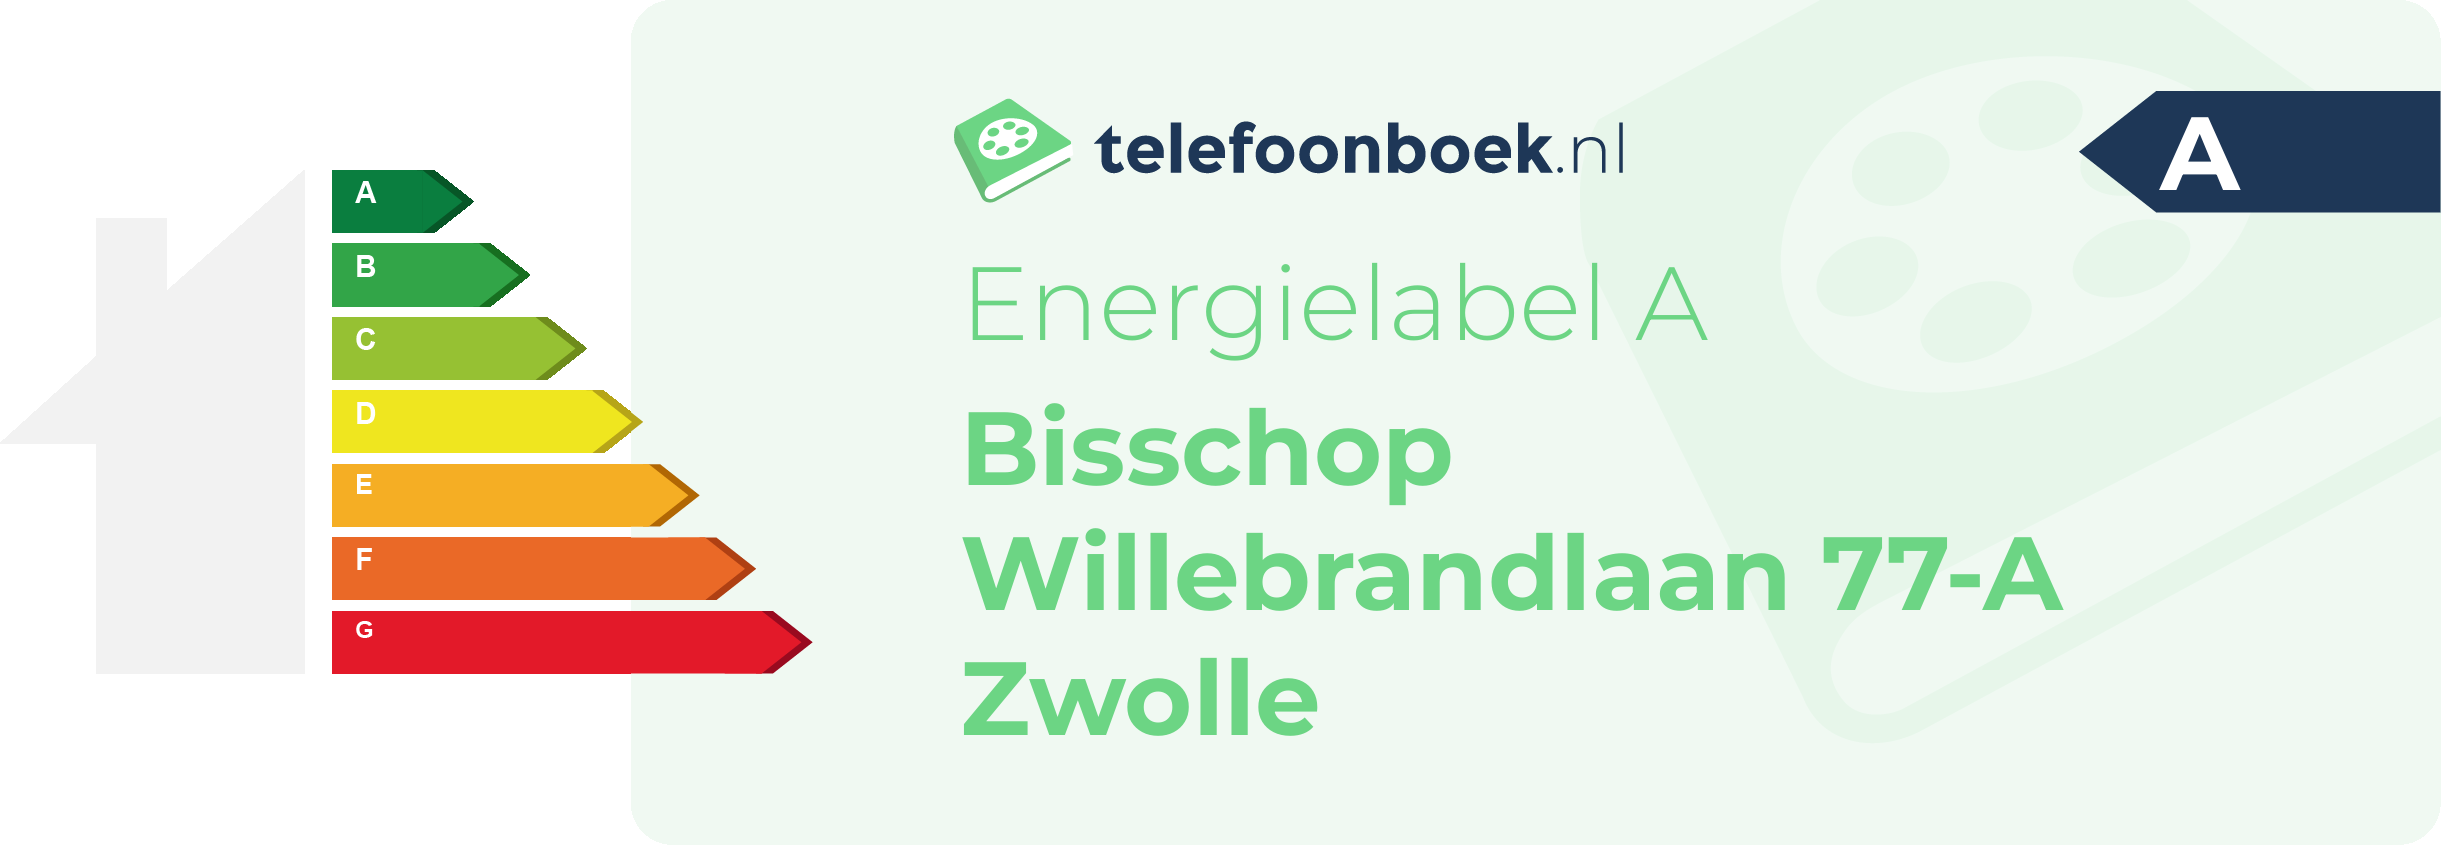 Energielabel Bisschop Willebrandlaan 77-A Zwolle